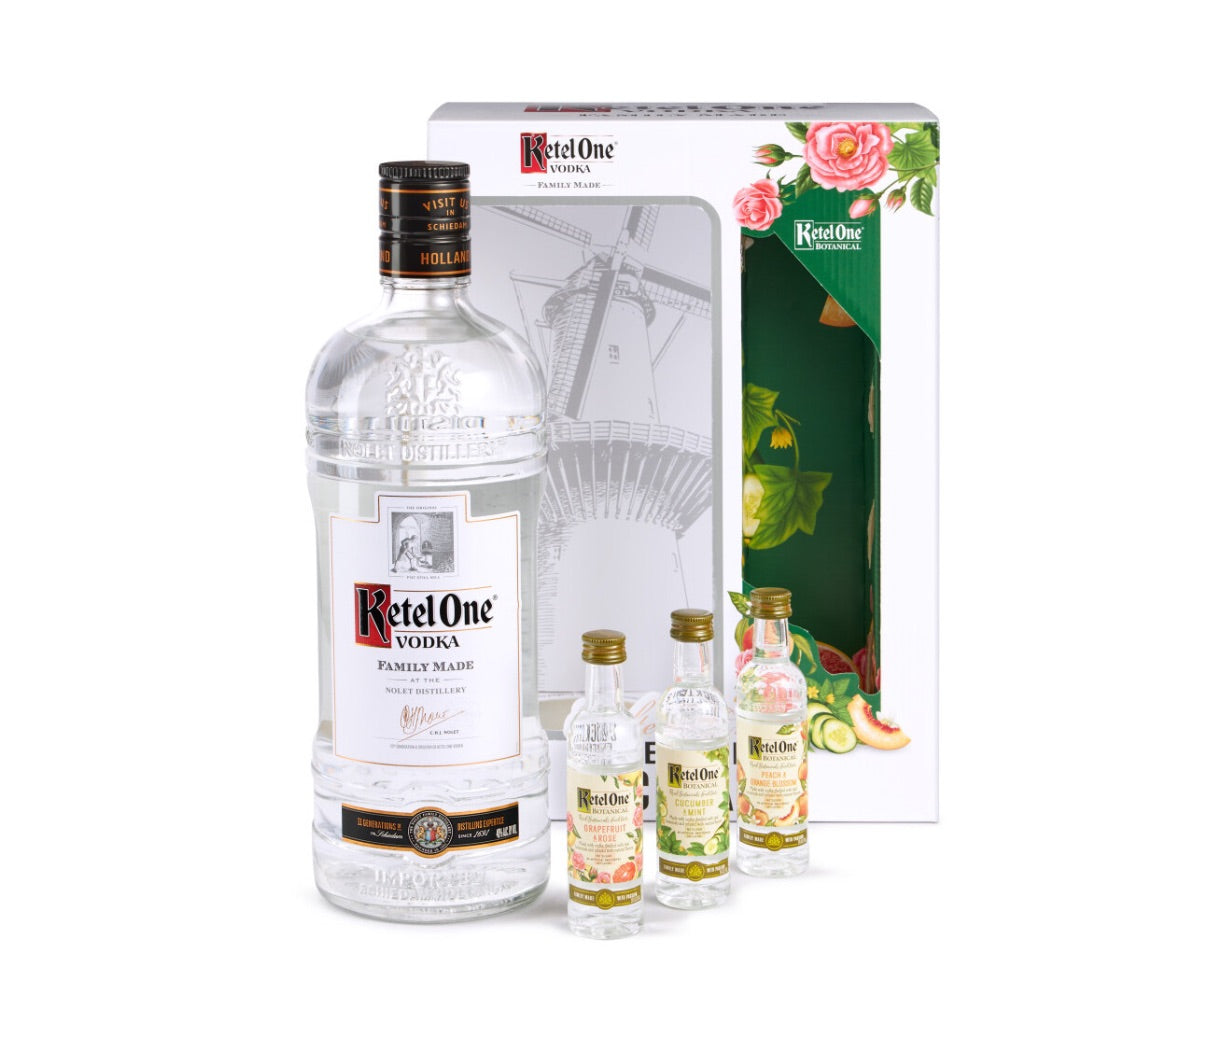 Ketel One Vodka 1.75 Liter with 3 Botanicals 50ml Gift Set